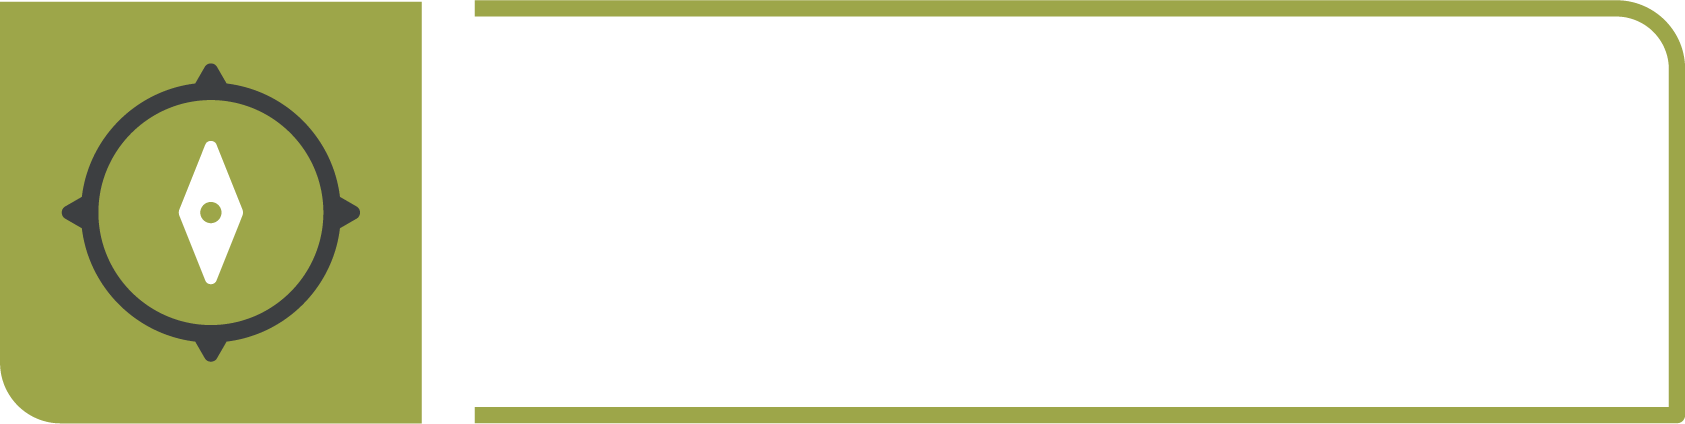 Een camper huren in Groningen? Wij verhuren enkel luxe en compleet uitgeruste campers.